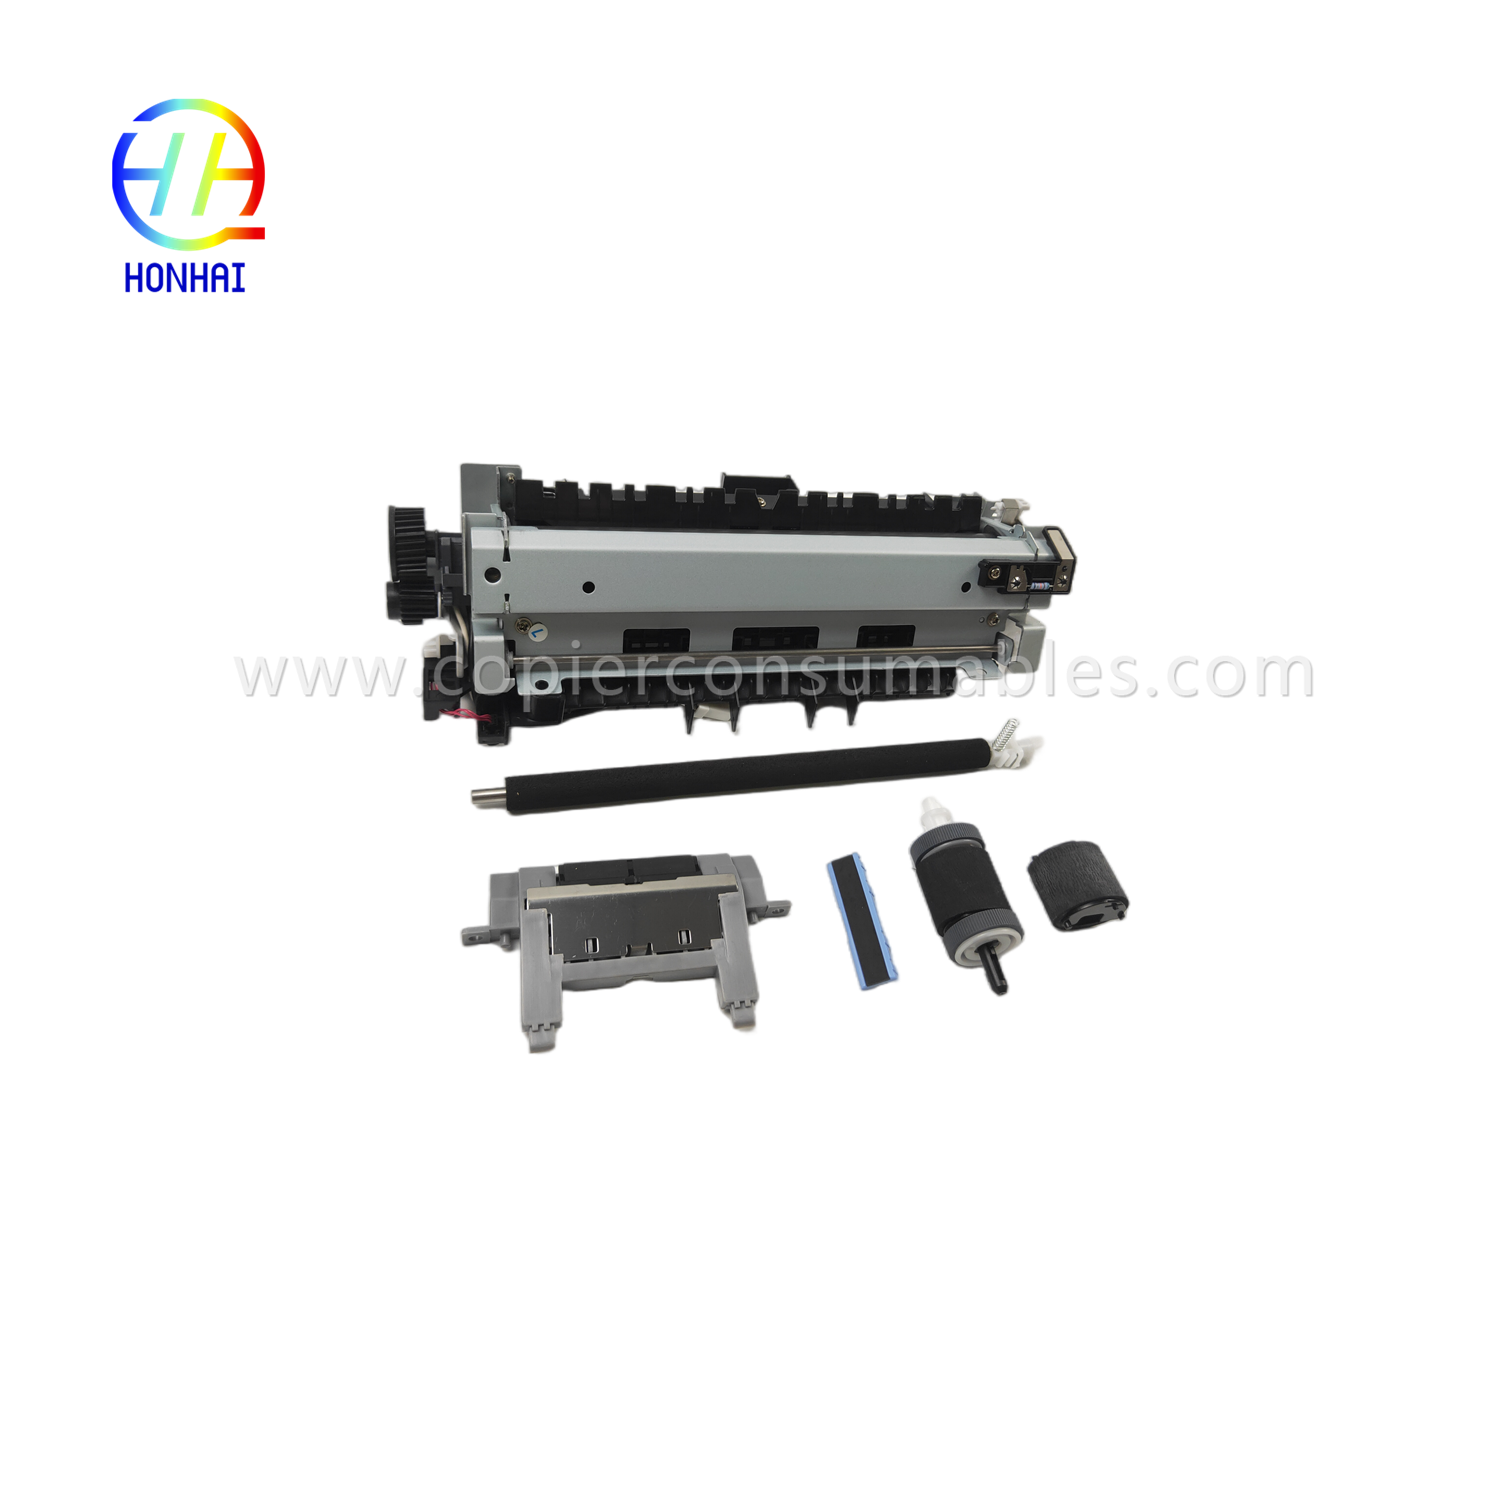 https://www.copierconsumables.com/maintenance-kit-220v-japan-for-hp-cf116-67903-laserjet-enterprise-500-mfp-m525-flow-mfp-m525c-pro-mfp-m521-includes-fuser-transfer-roller-tray-1-separation-pad-tray-2-roller-tray-2-separation-pad-product/